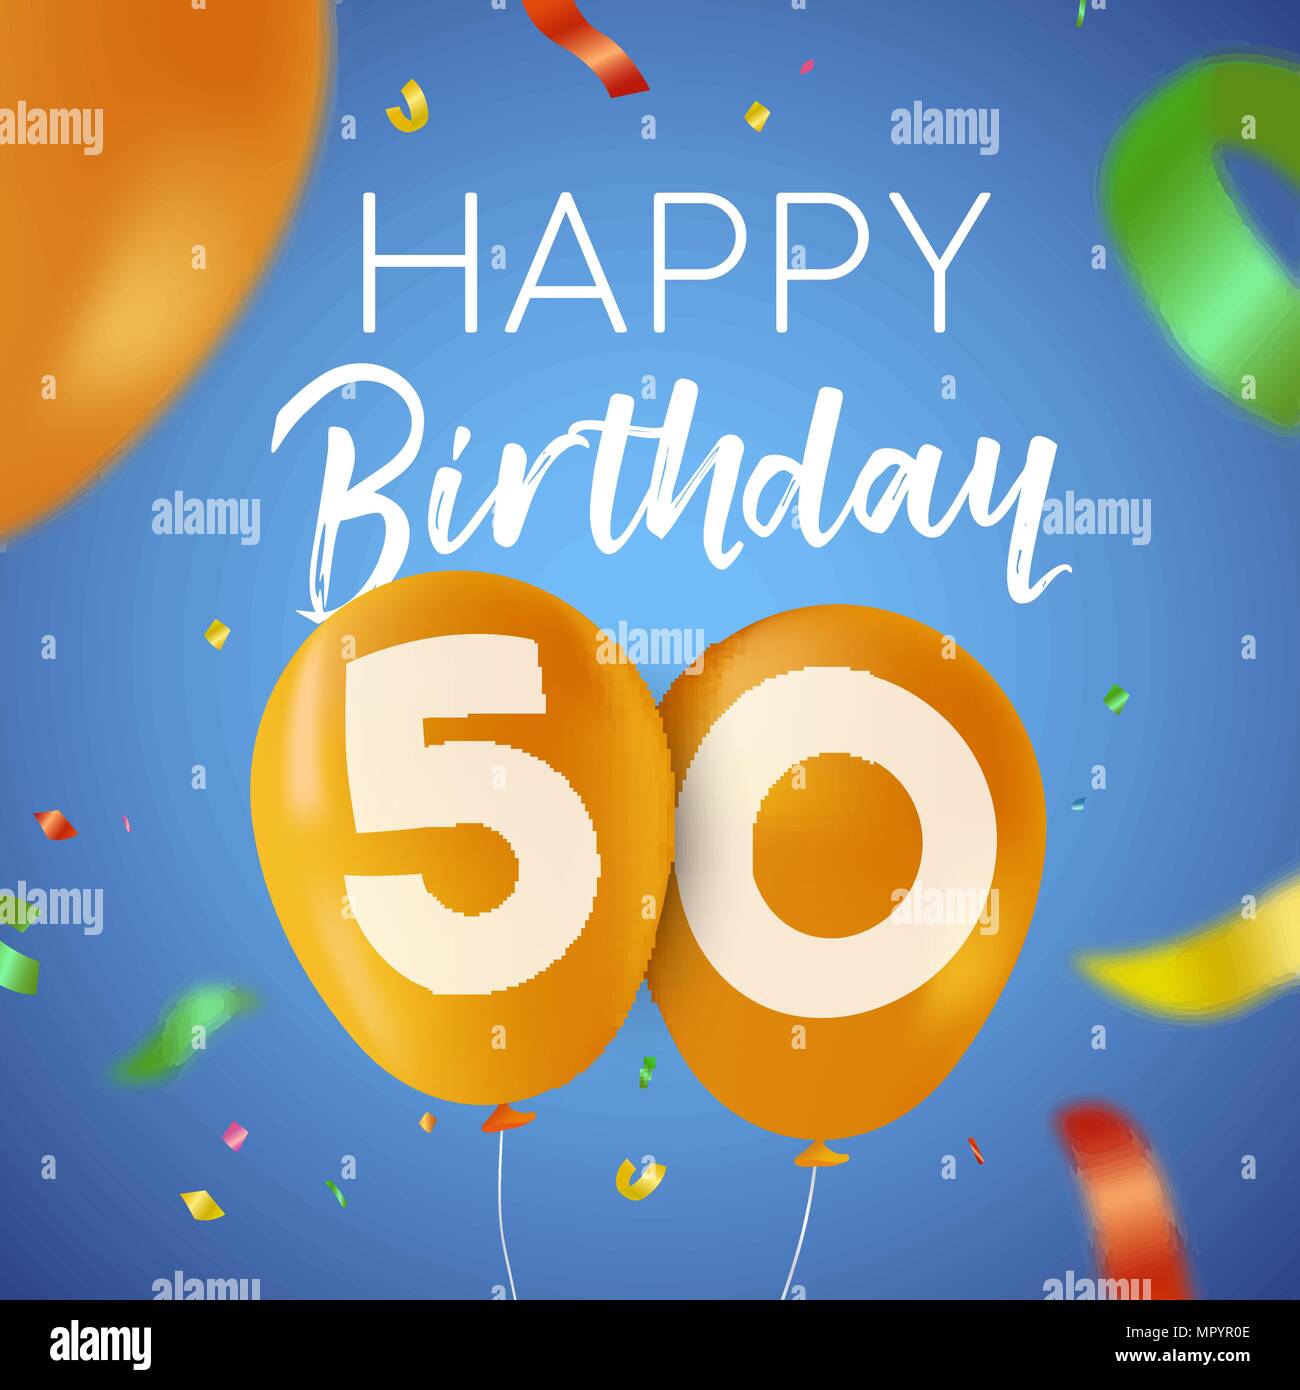 Happy Birthday 50 50 Jahre Spaß Design mit Ballon Anzahl und bunte Konfetti Dekoration. Ideal für Party Einladung oder Grußkarte. EPS 10 vect Stock Vektor